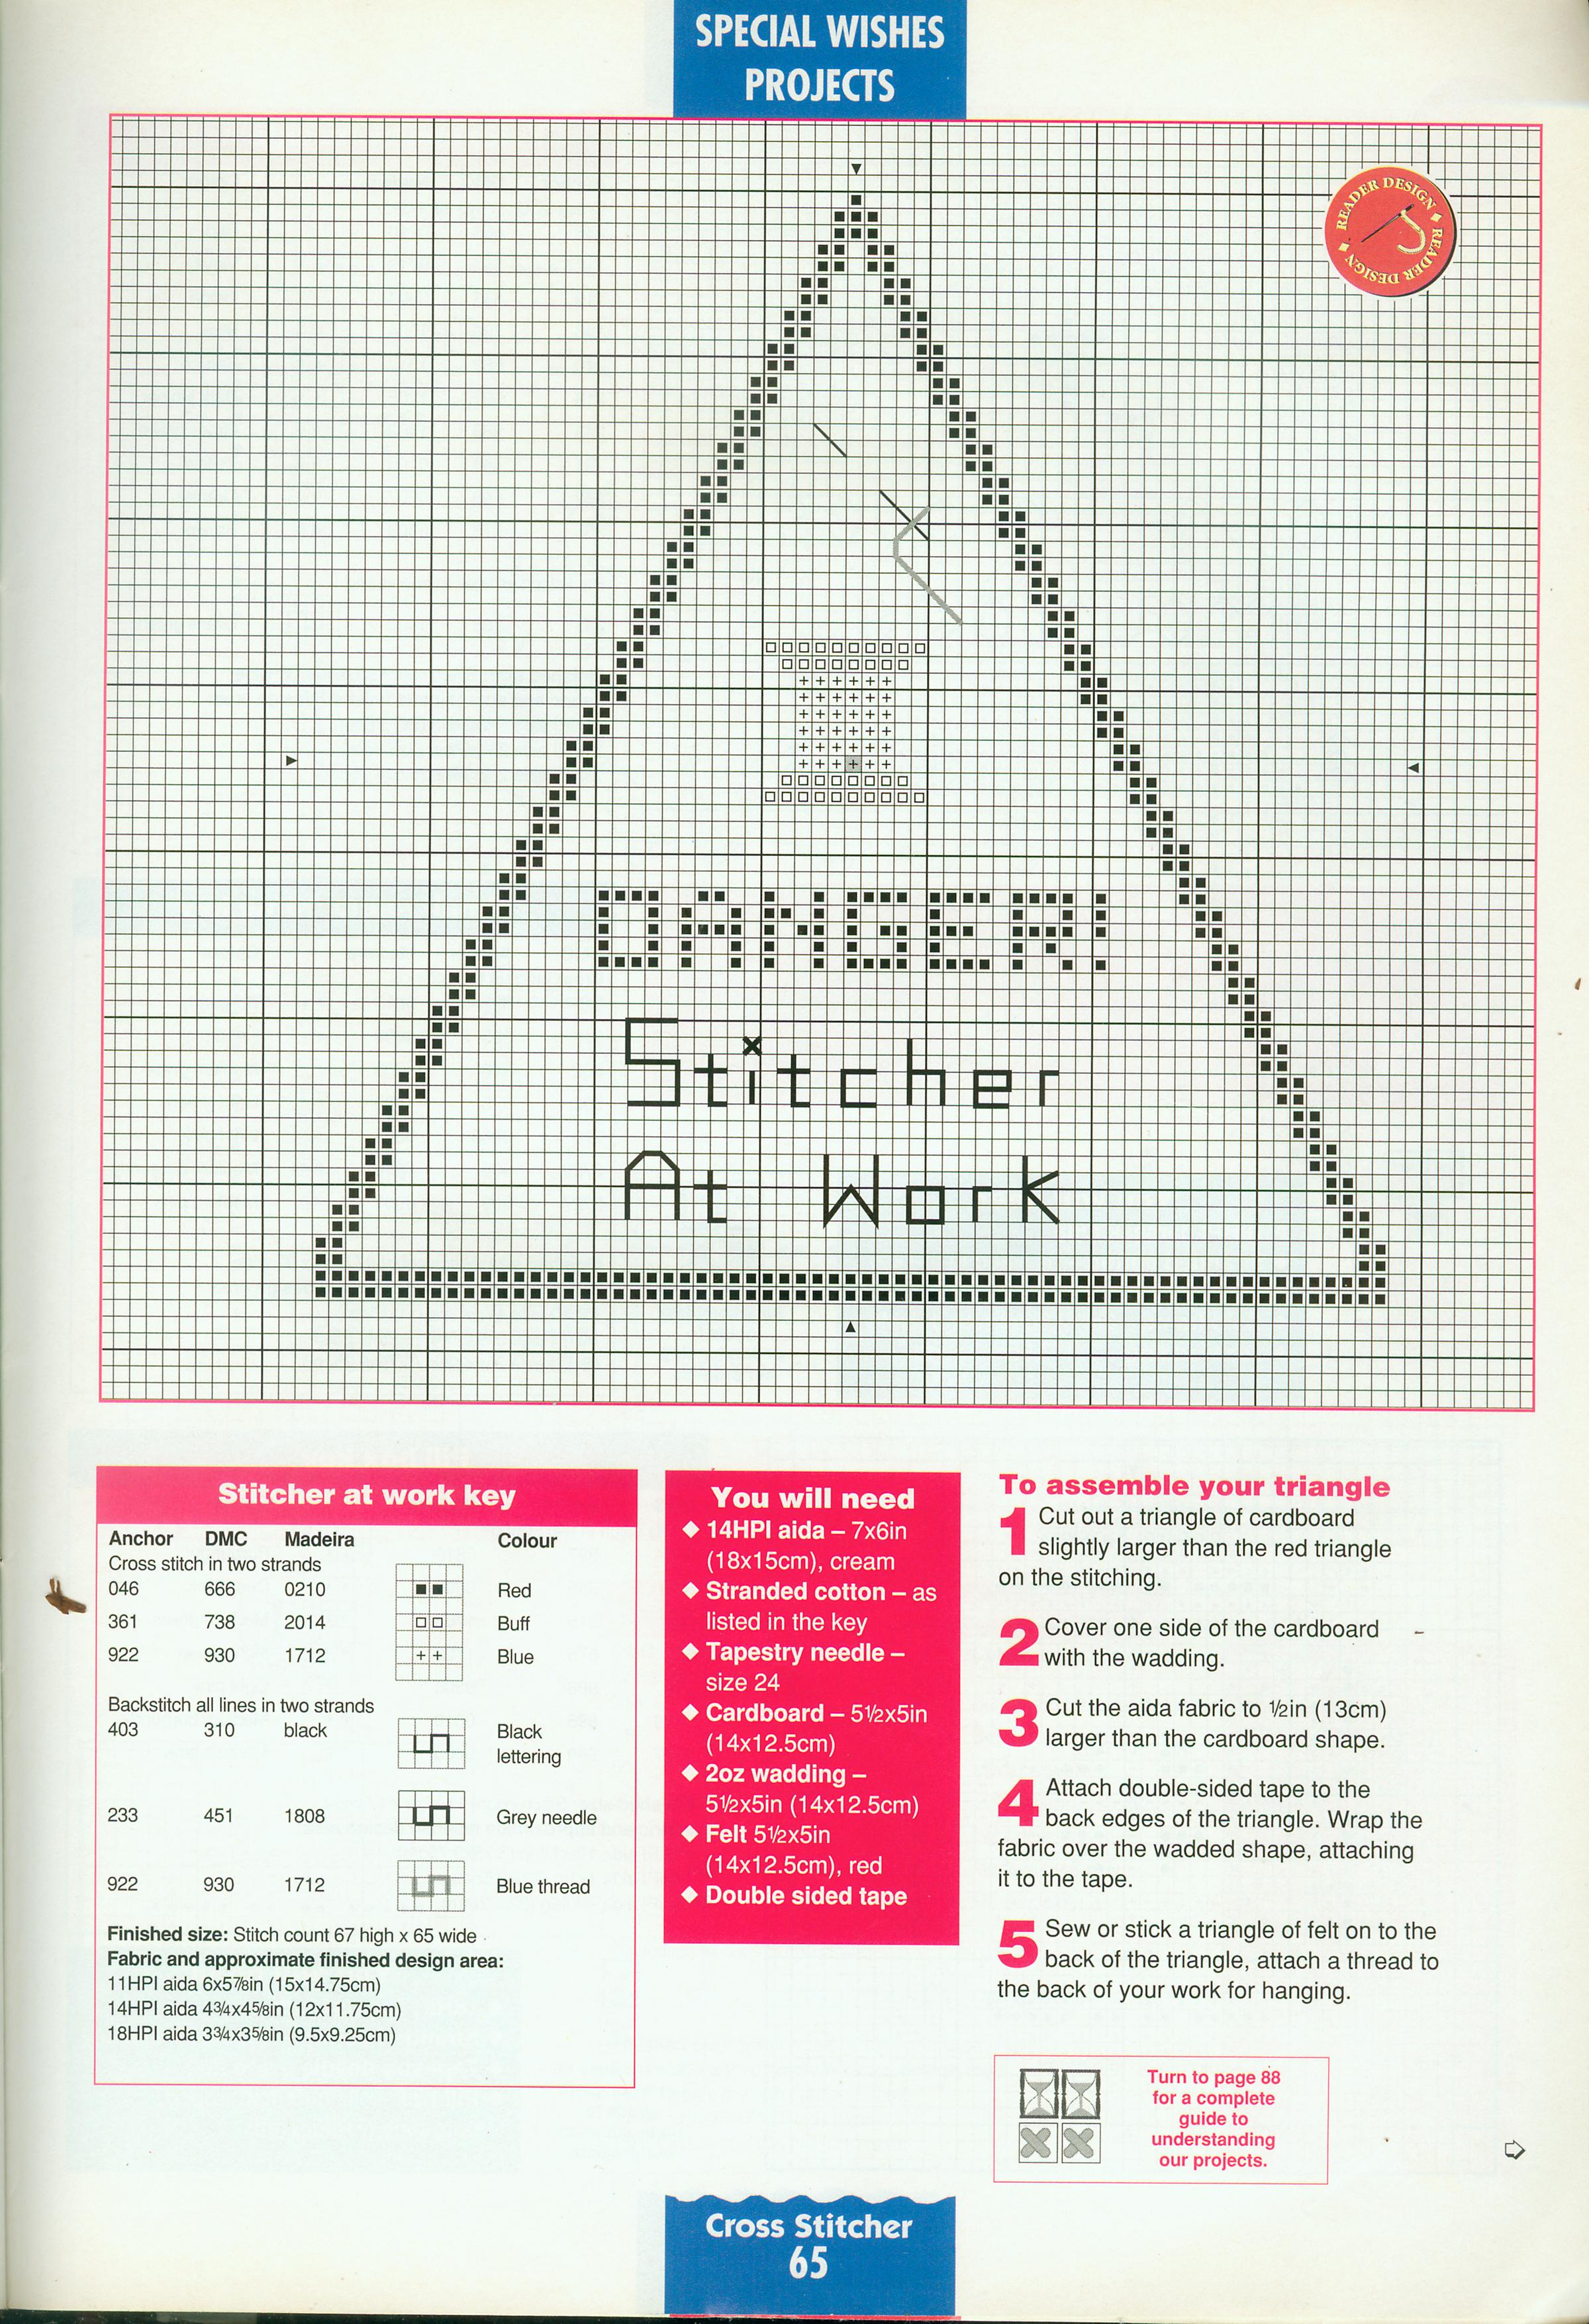 Danger stitcher at work (2)